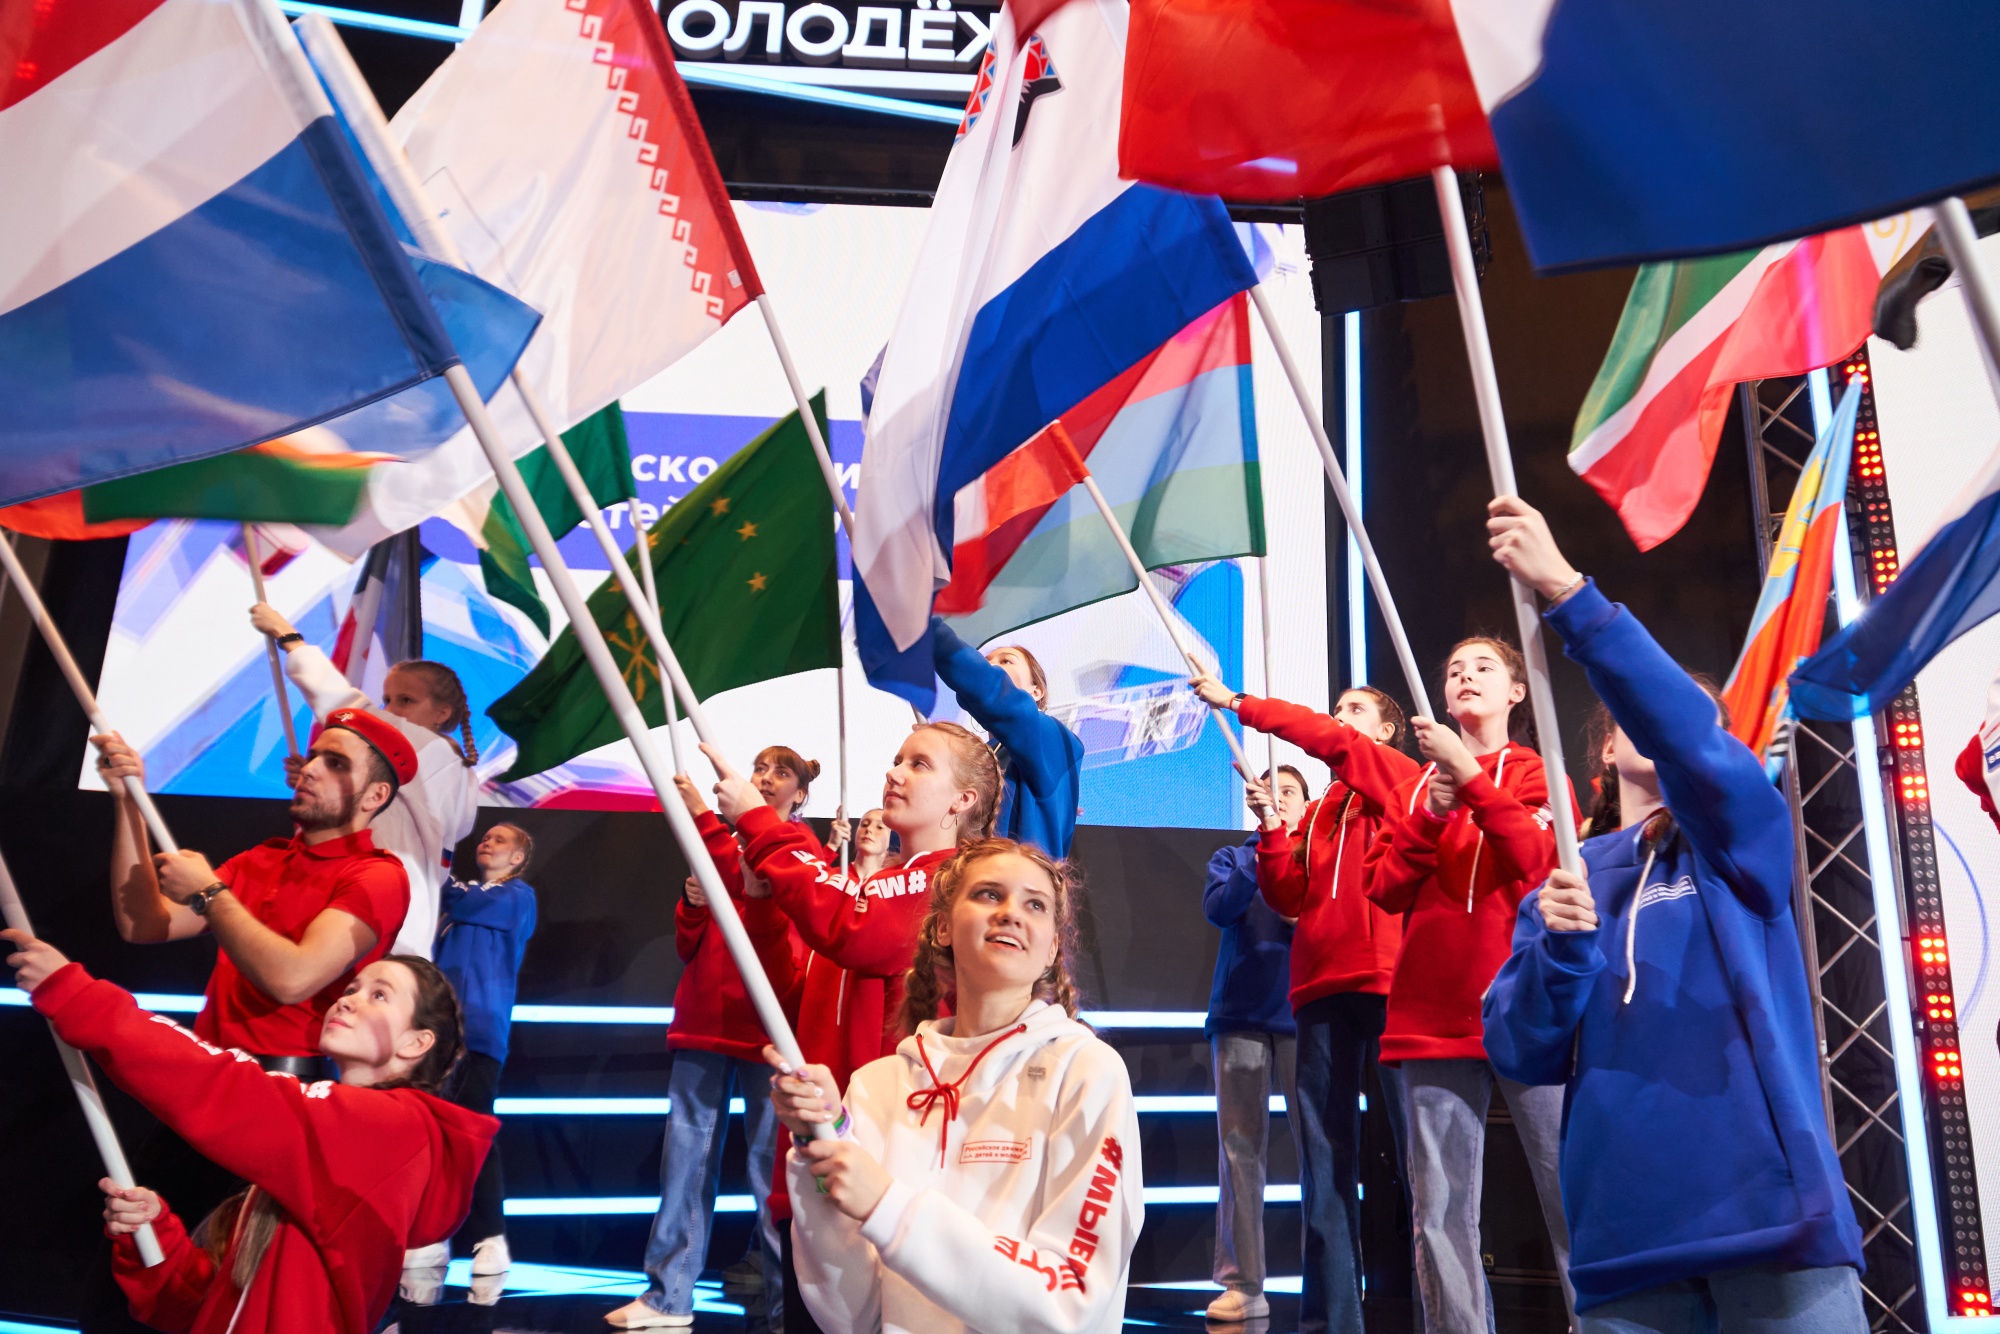 Молодежь россии цель. Активная молодежь. Молодежные организации. Российские дети. Молодежь с флагом России.